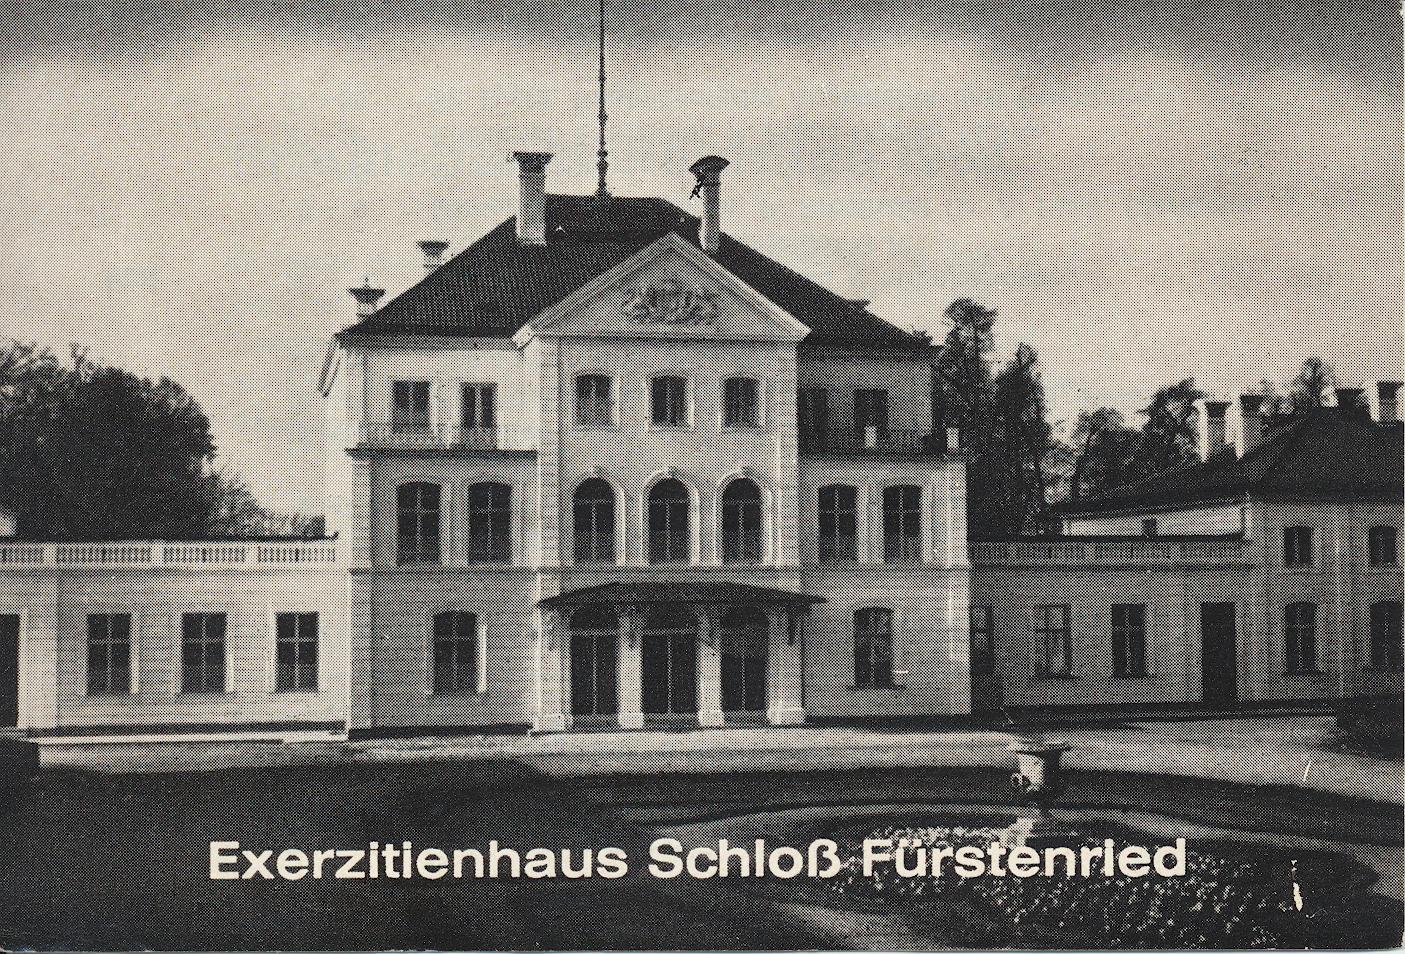 I. Internat. Imago Mundi-Kongress im Exerzitienhaus in Fürstenried bei München, 26.-29.09.1966